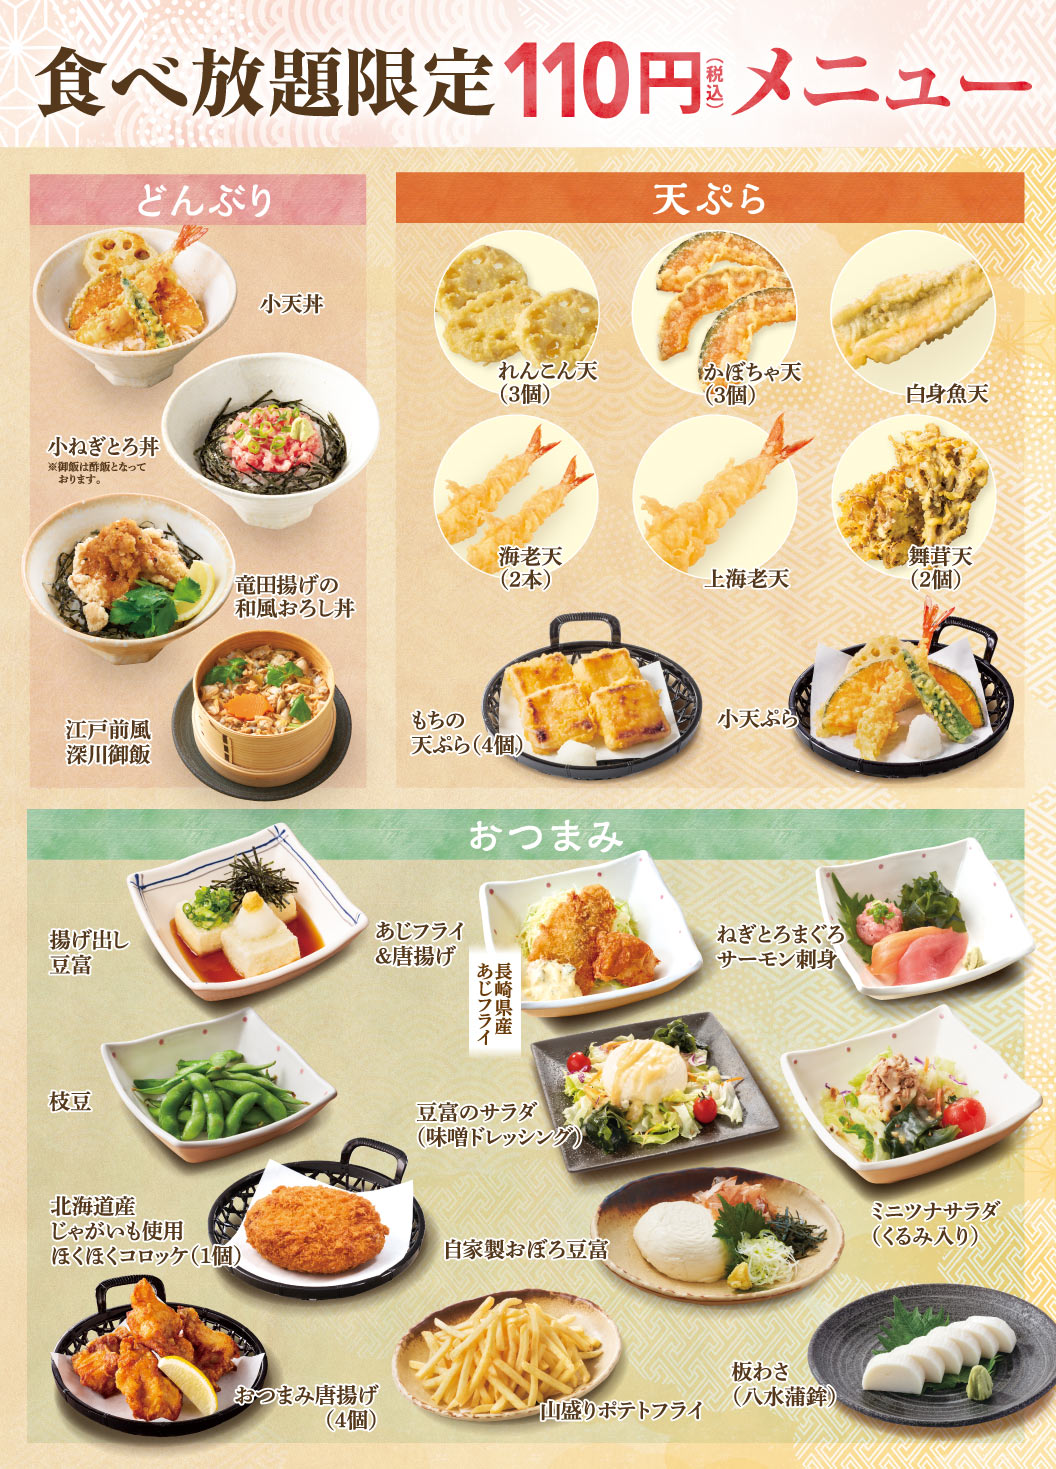 火锅自助餐110日元（不含税）菜单